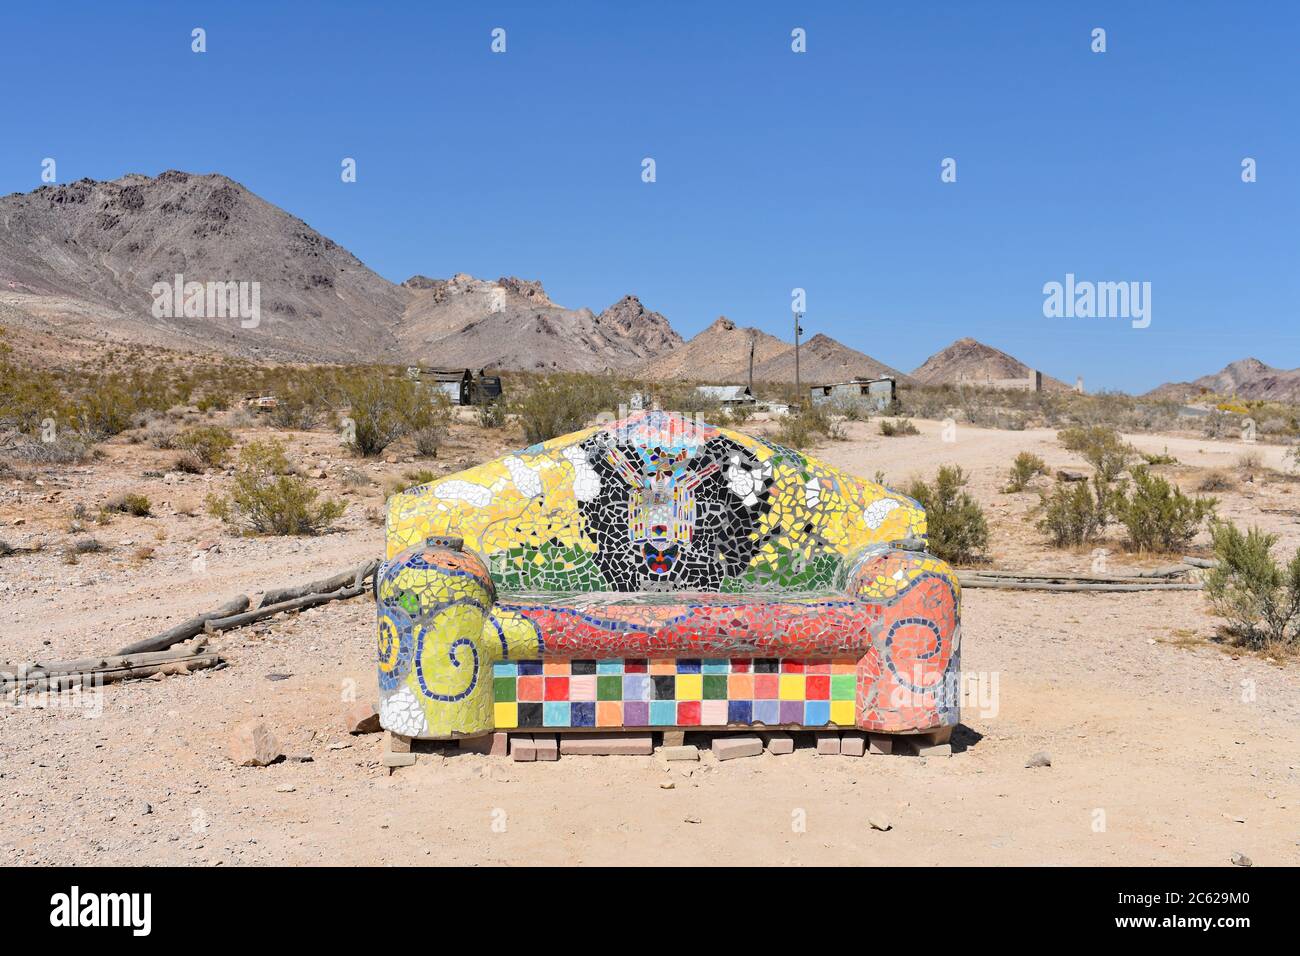 Asseyez-vous ici ! Par Sofie Siegmann. Un canapé en mosaïque coloré / canapé dans le désert. Musée de sculpture en plein air de Goldwell, près de la Vallée de la mort, Nevada. Banque D'Images